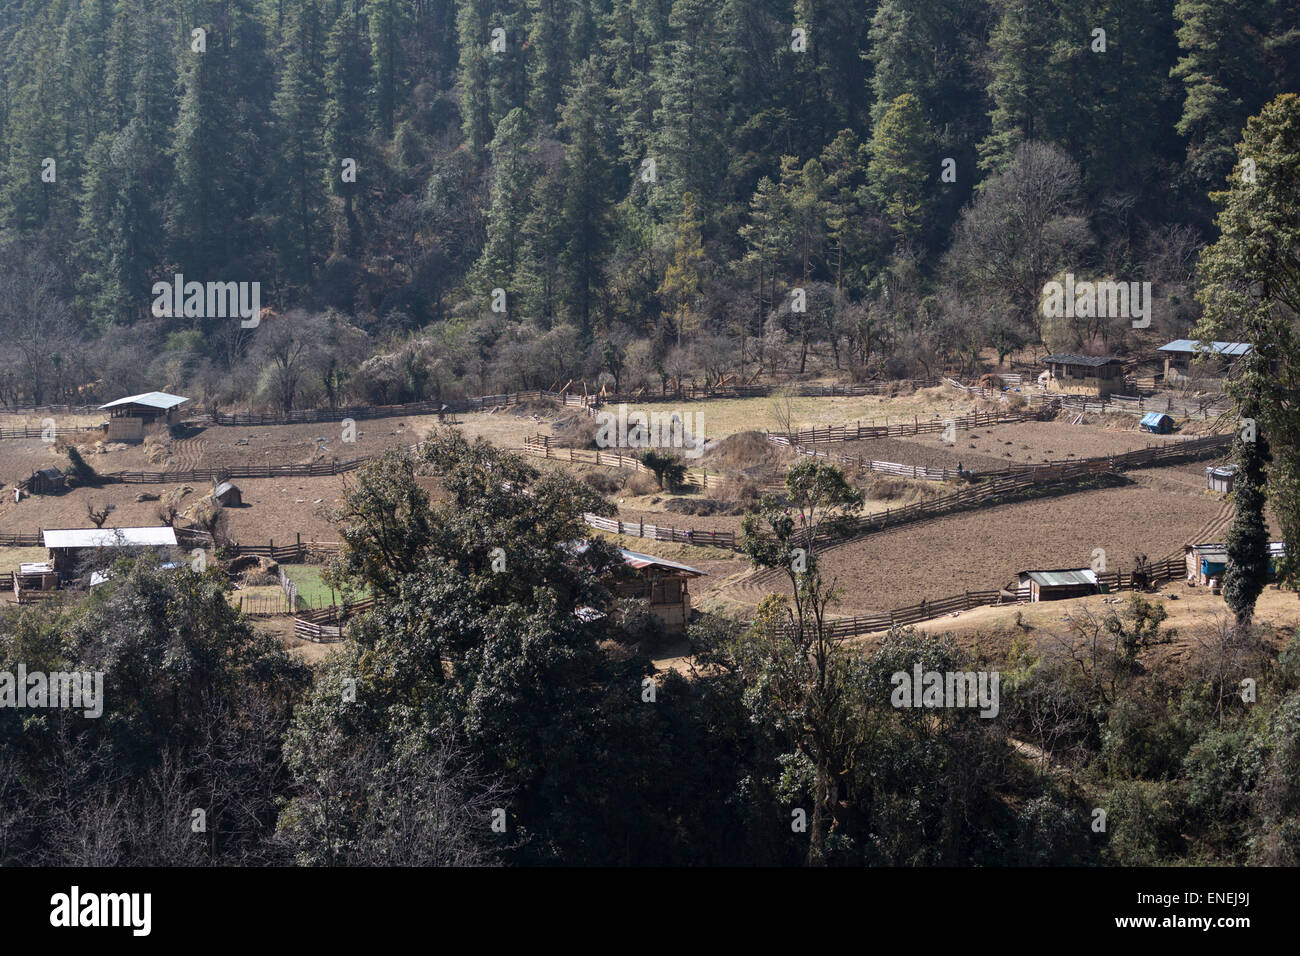 Bauernhöfe und Landschaft in der Nähe von Sephu (Chazam), Wangdue Phodrang, westliche Bhutan, Asien Stockfoto